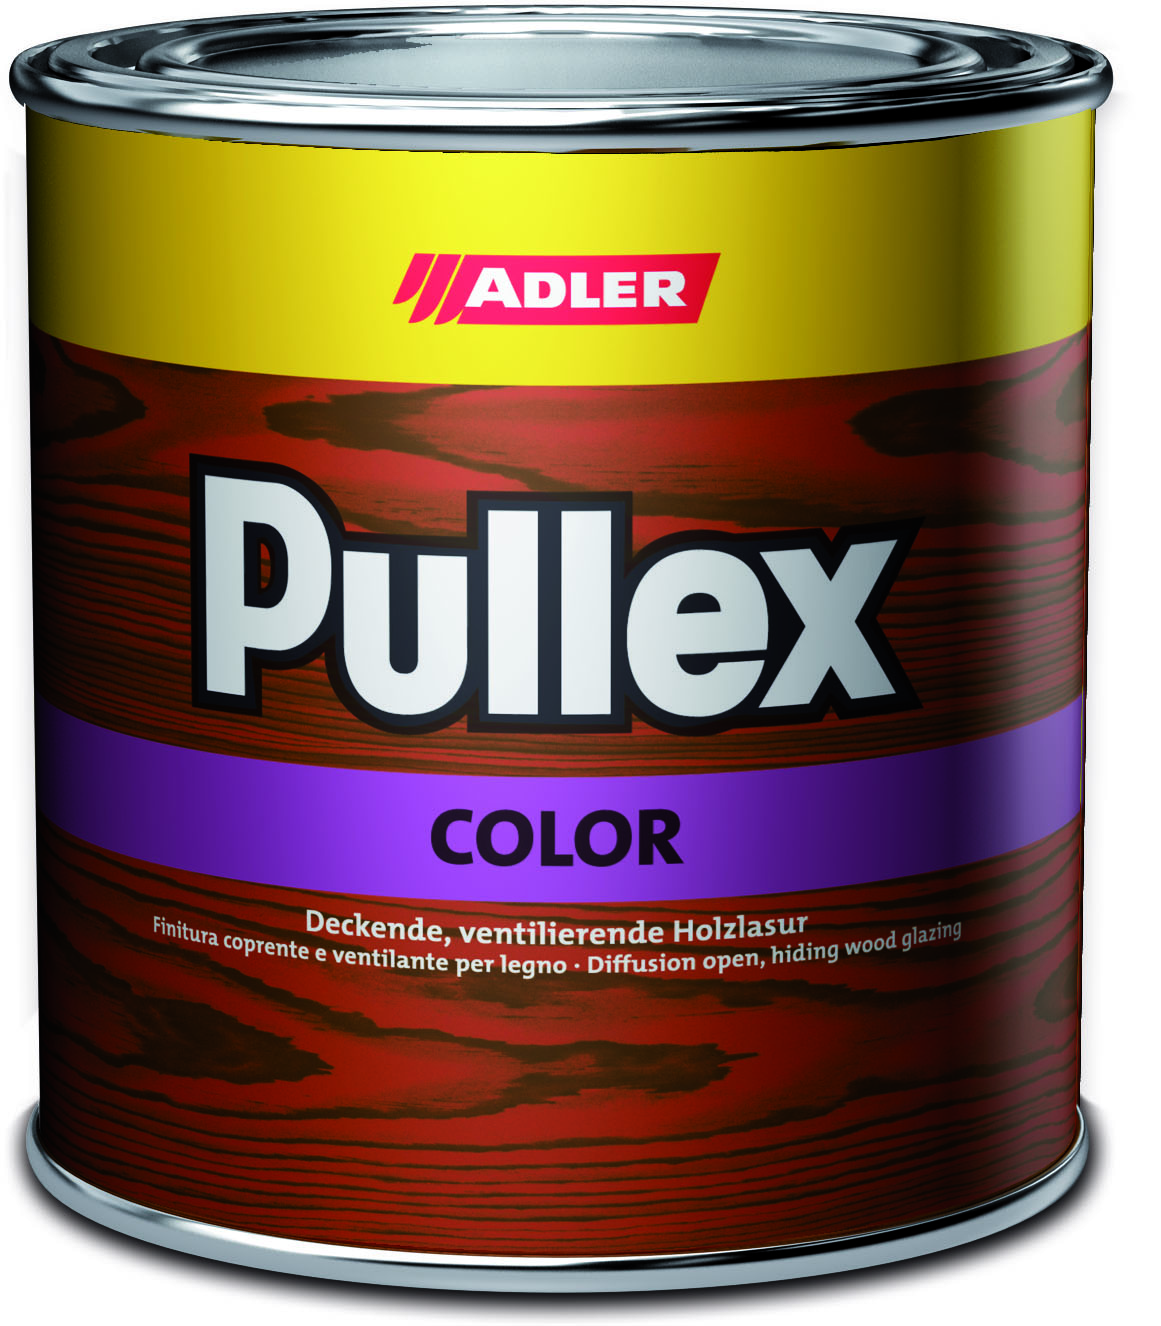 ADLER PULLEX COLOR - Ochranná farba na drevo do exteriéru 2,5 l ral 2002 - rumelková